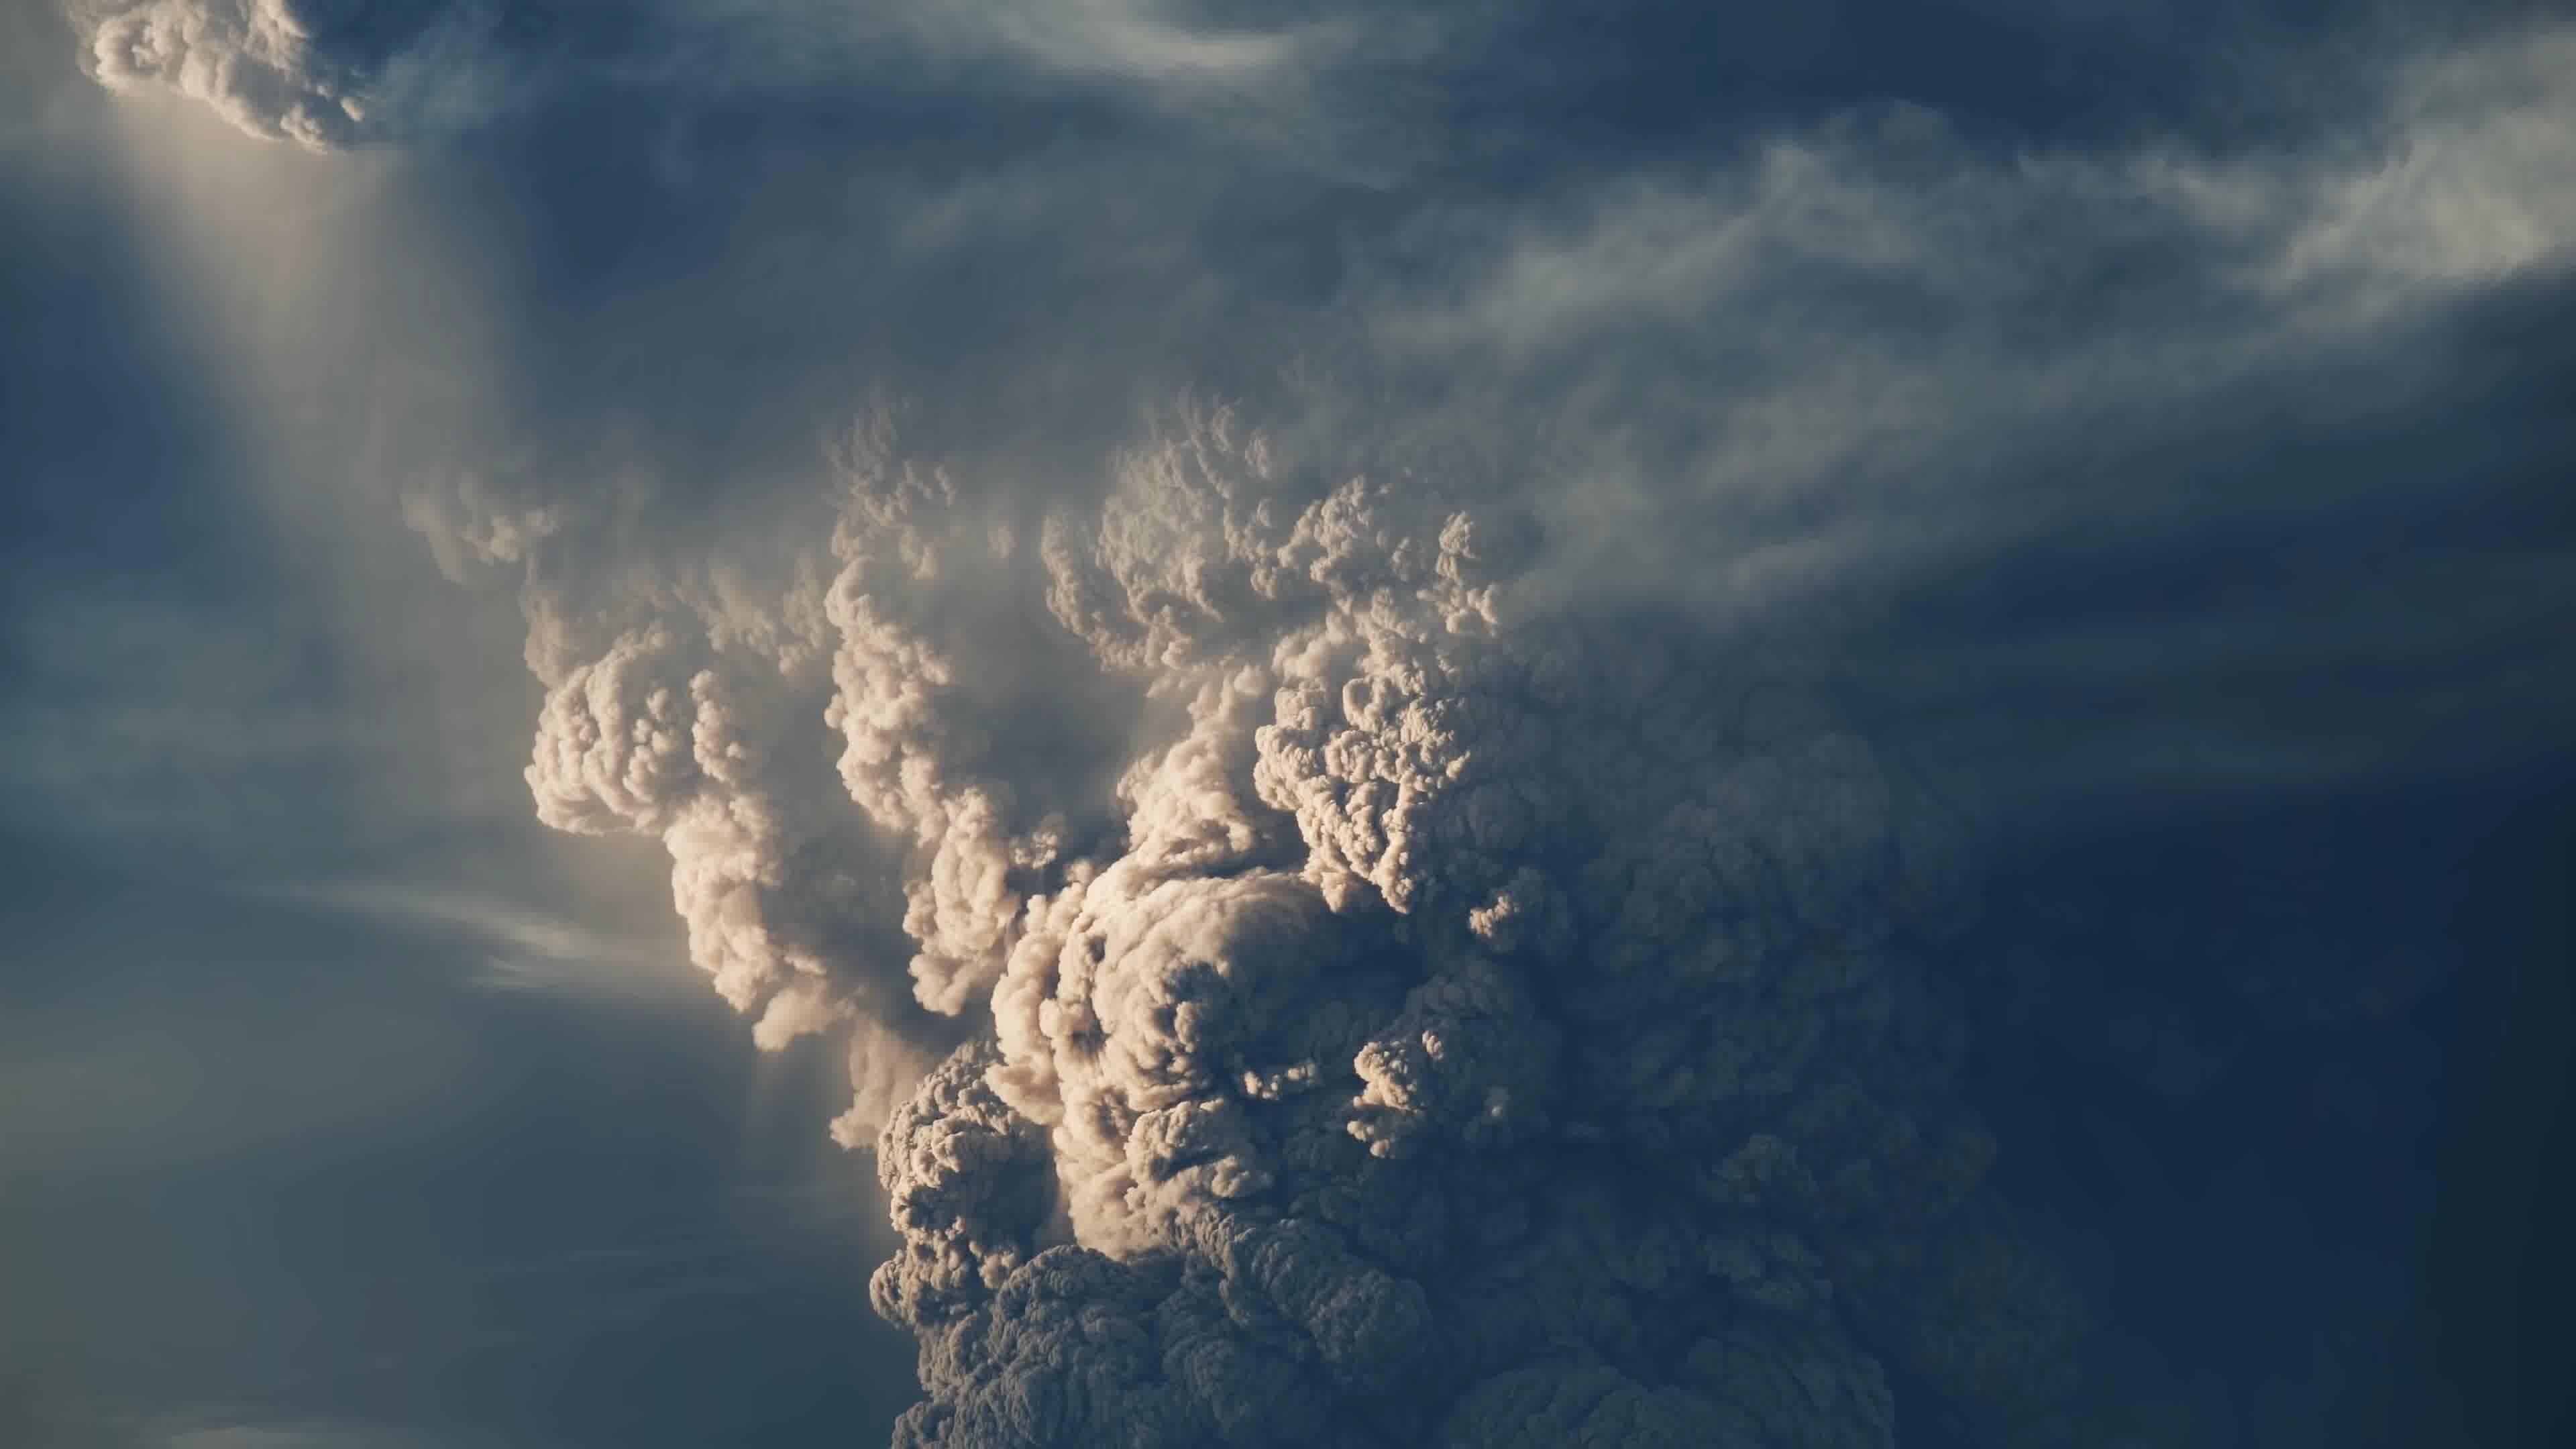 地壳运动地质灾害火山爆发岩浆视频素材,其它视频素材下载,高清1920X1080视频素材下载,凌点视频素材网,编号:105912